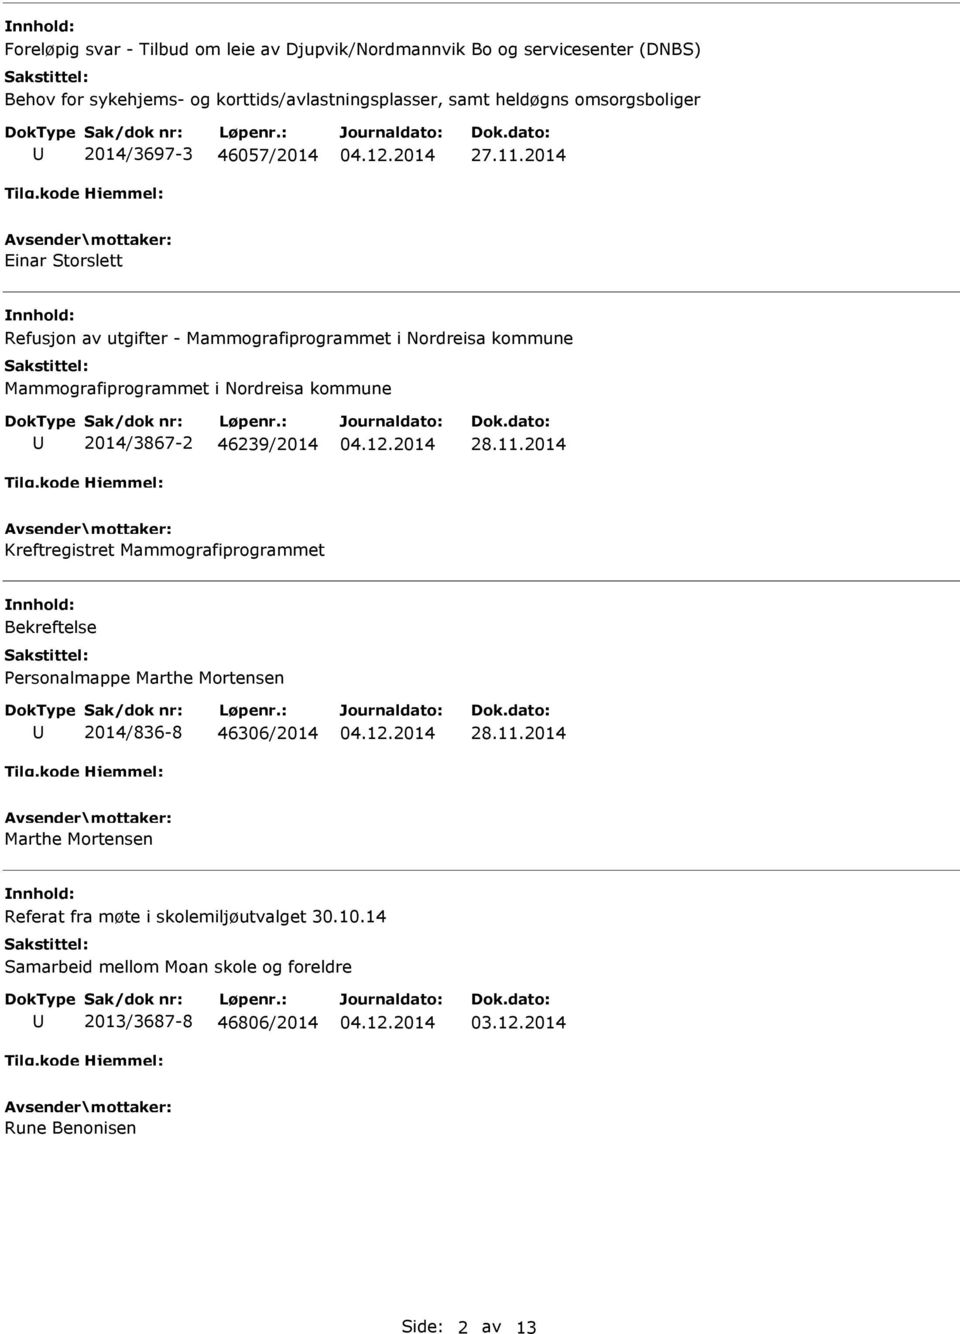 2014 Einar Storslett Refusjon av utgifter - Mammografiprogrammet i Nordreisa kommune Mammografiprogrammet i Nordreisa kommune 2014/3867-2 46239/2014 28.11.